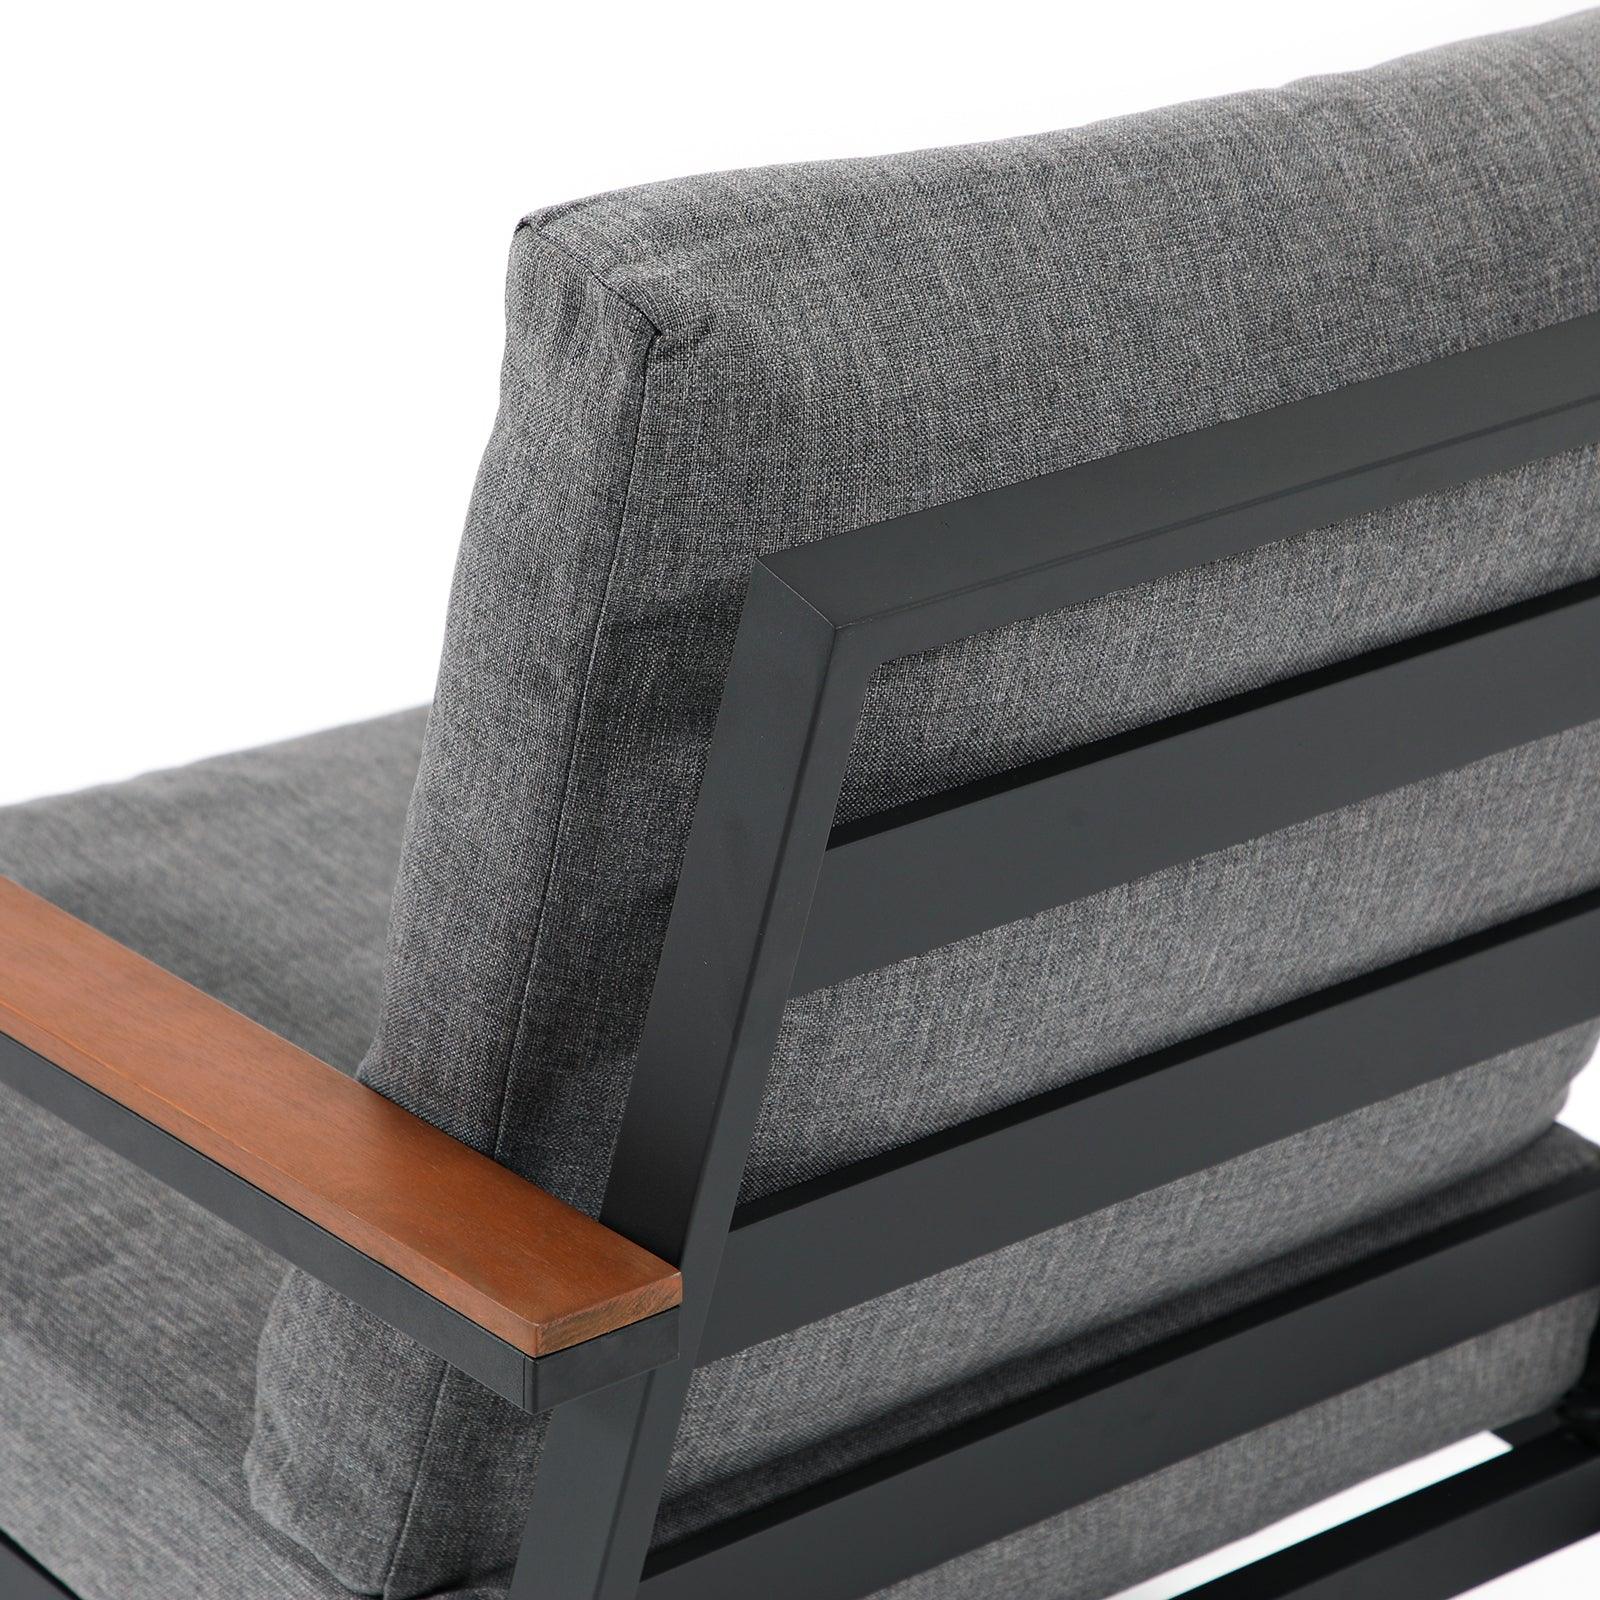 Ronda Grey aluminum outdoor Sofa with wood design, 3 seaters, grey cushions, wood finish armrest close-up view- Jardina Furniture